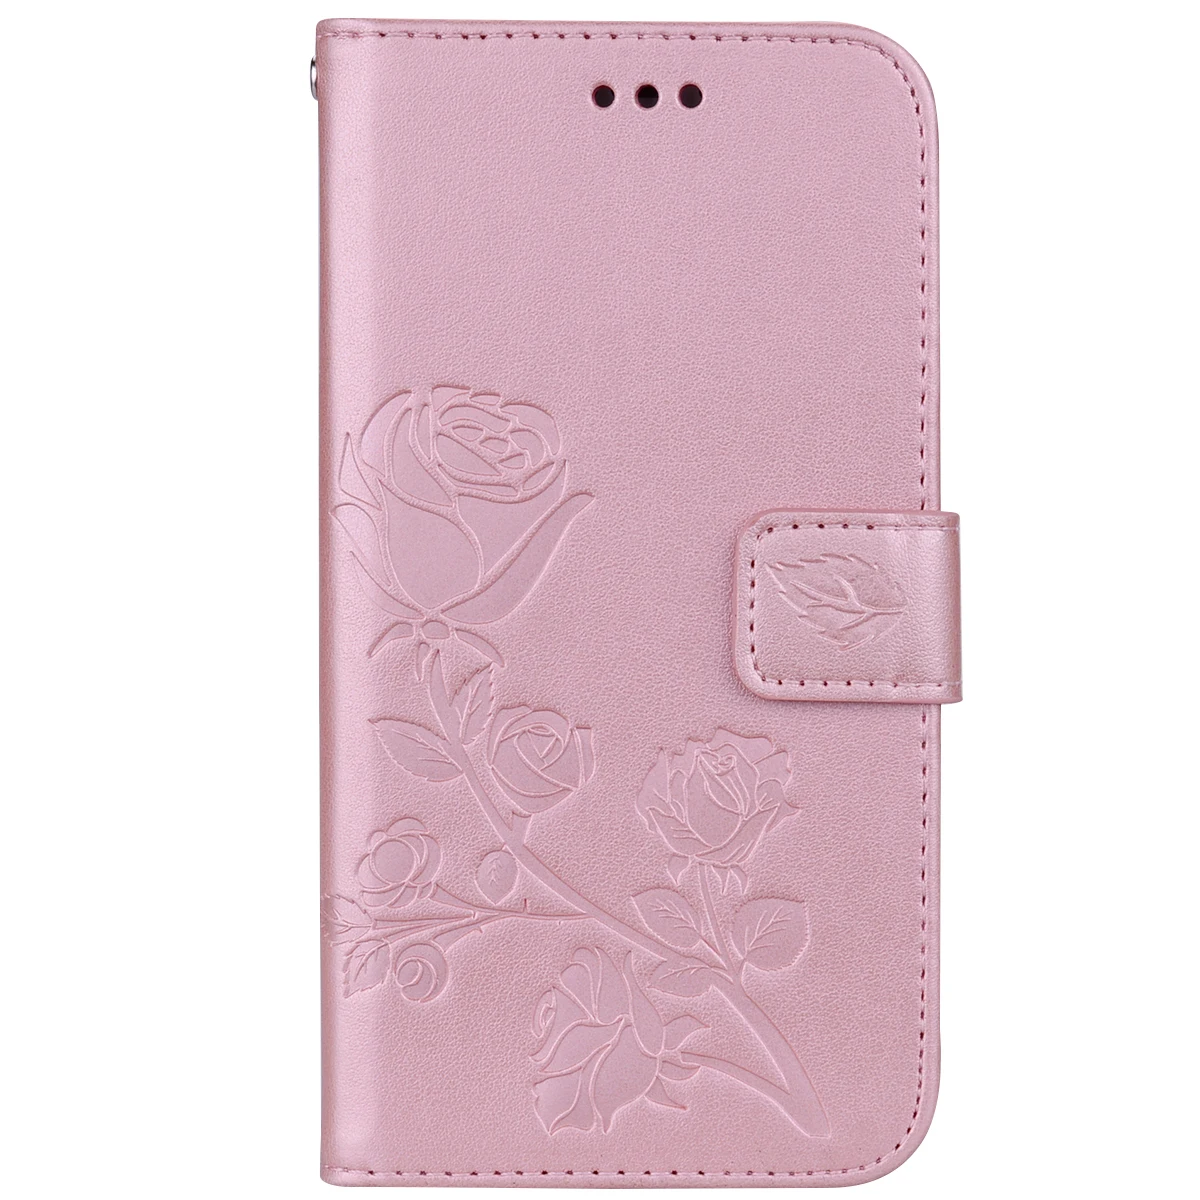 Флип-чехол для Xiaomi Mi A1 Xiaomi Mi A2 Lite из искусственной кожи+ Чехол-кошелек для Coque Xiaomi Mi 5X чехол-кошелек Чехол-книжка Fundas - Цвет: Pink 2